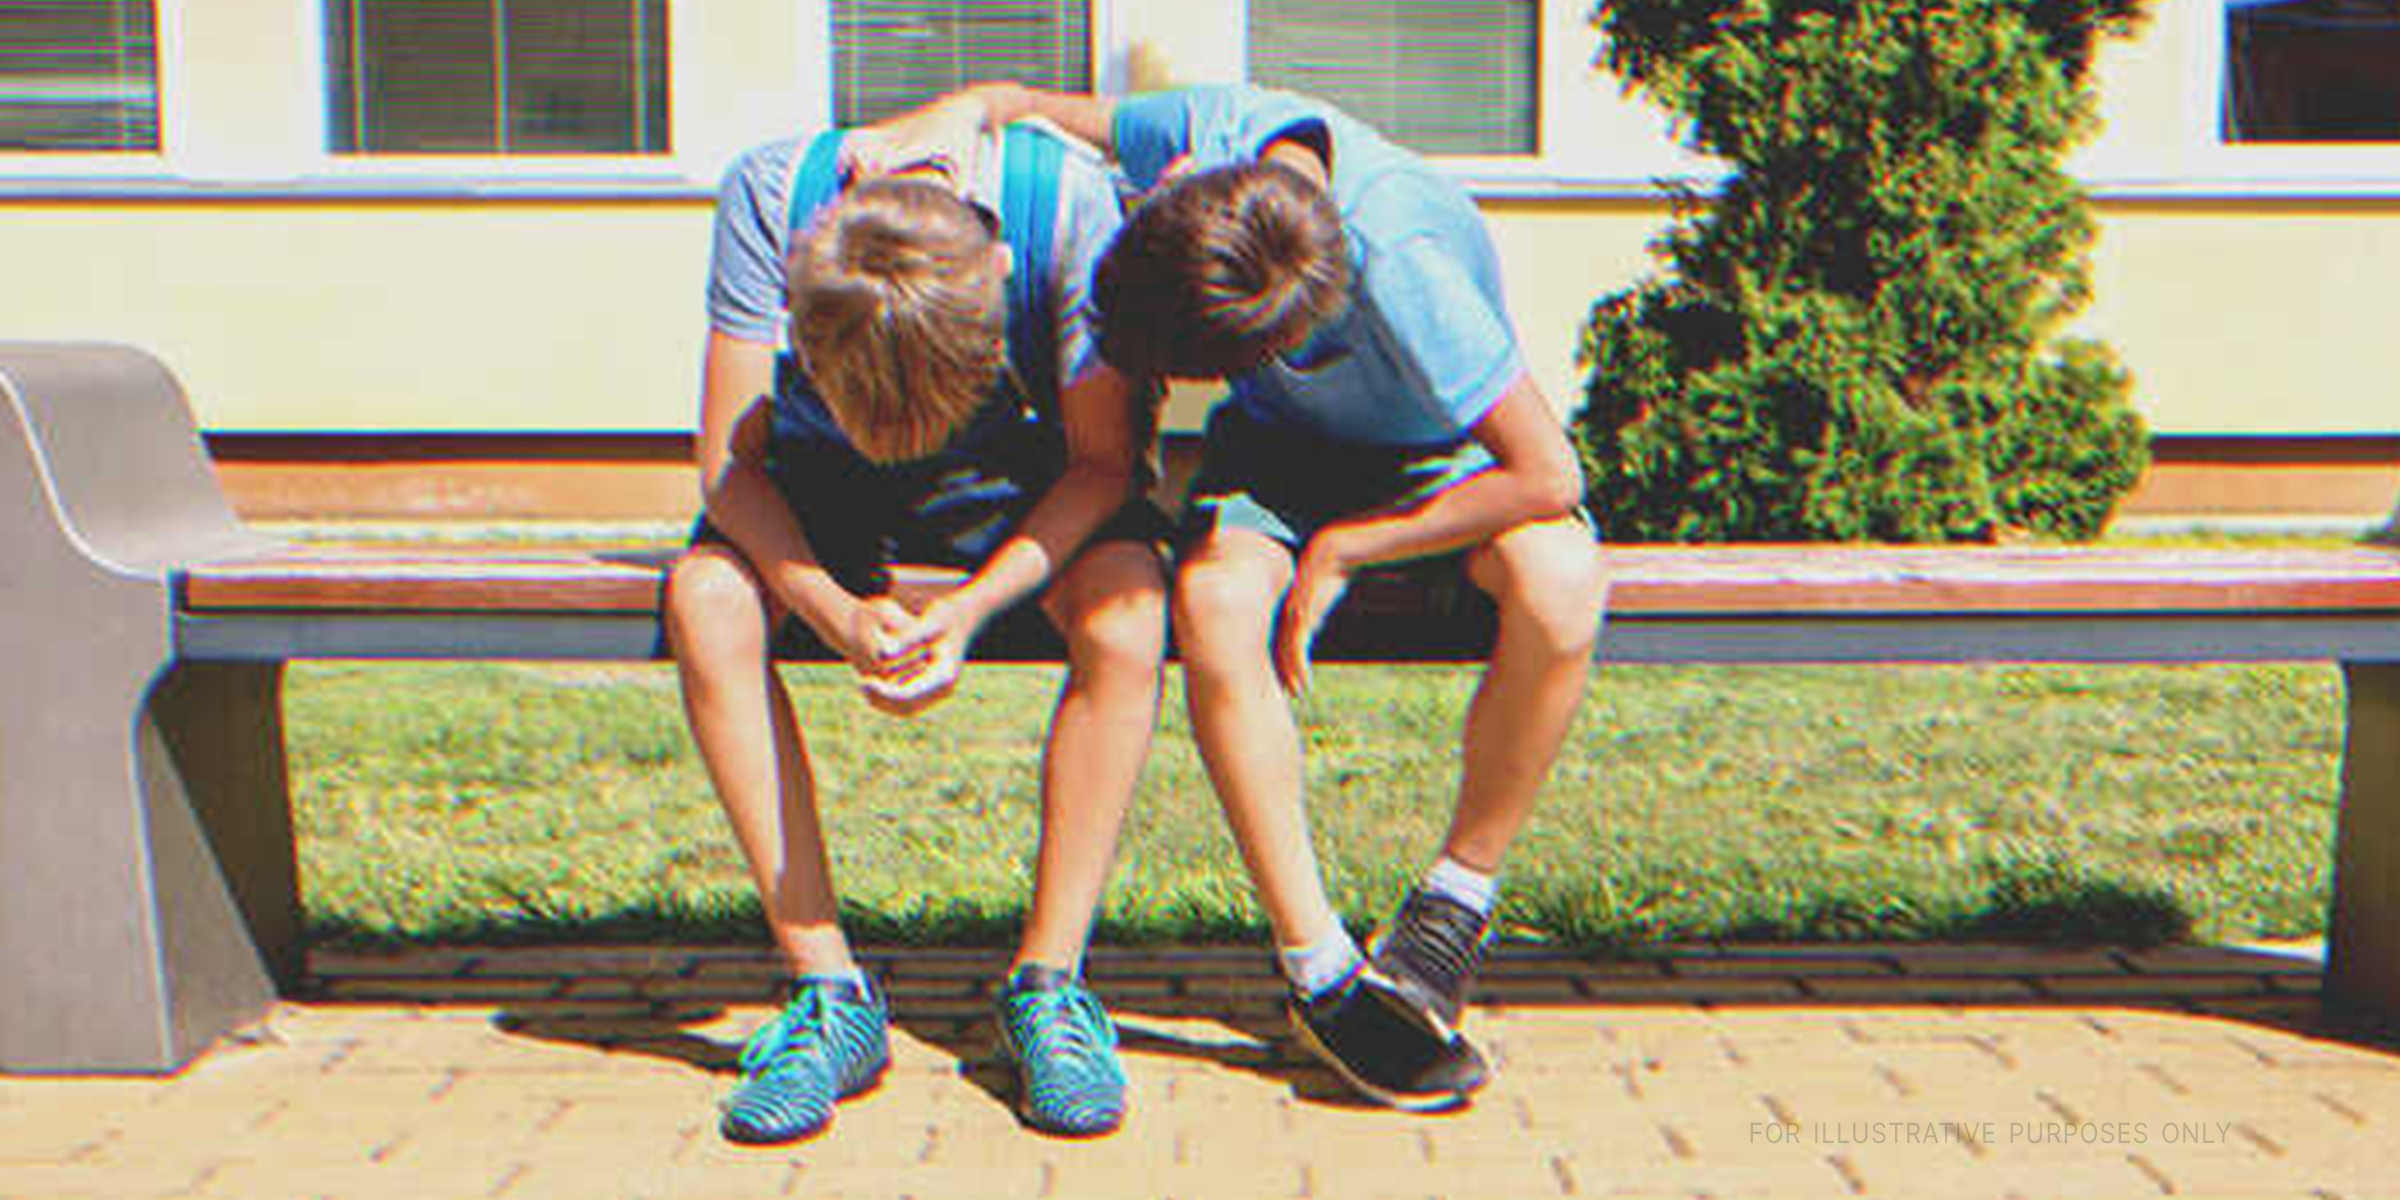 Deux adolescents sur un banc | Source : Shutterstock